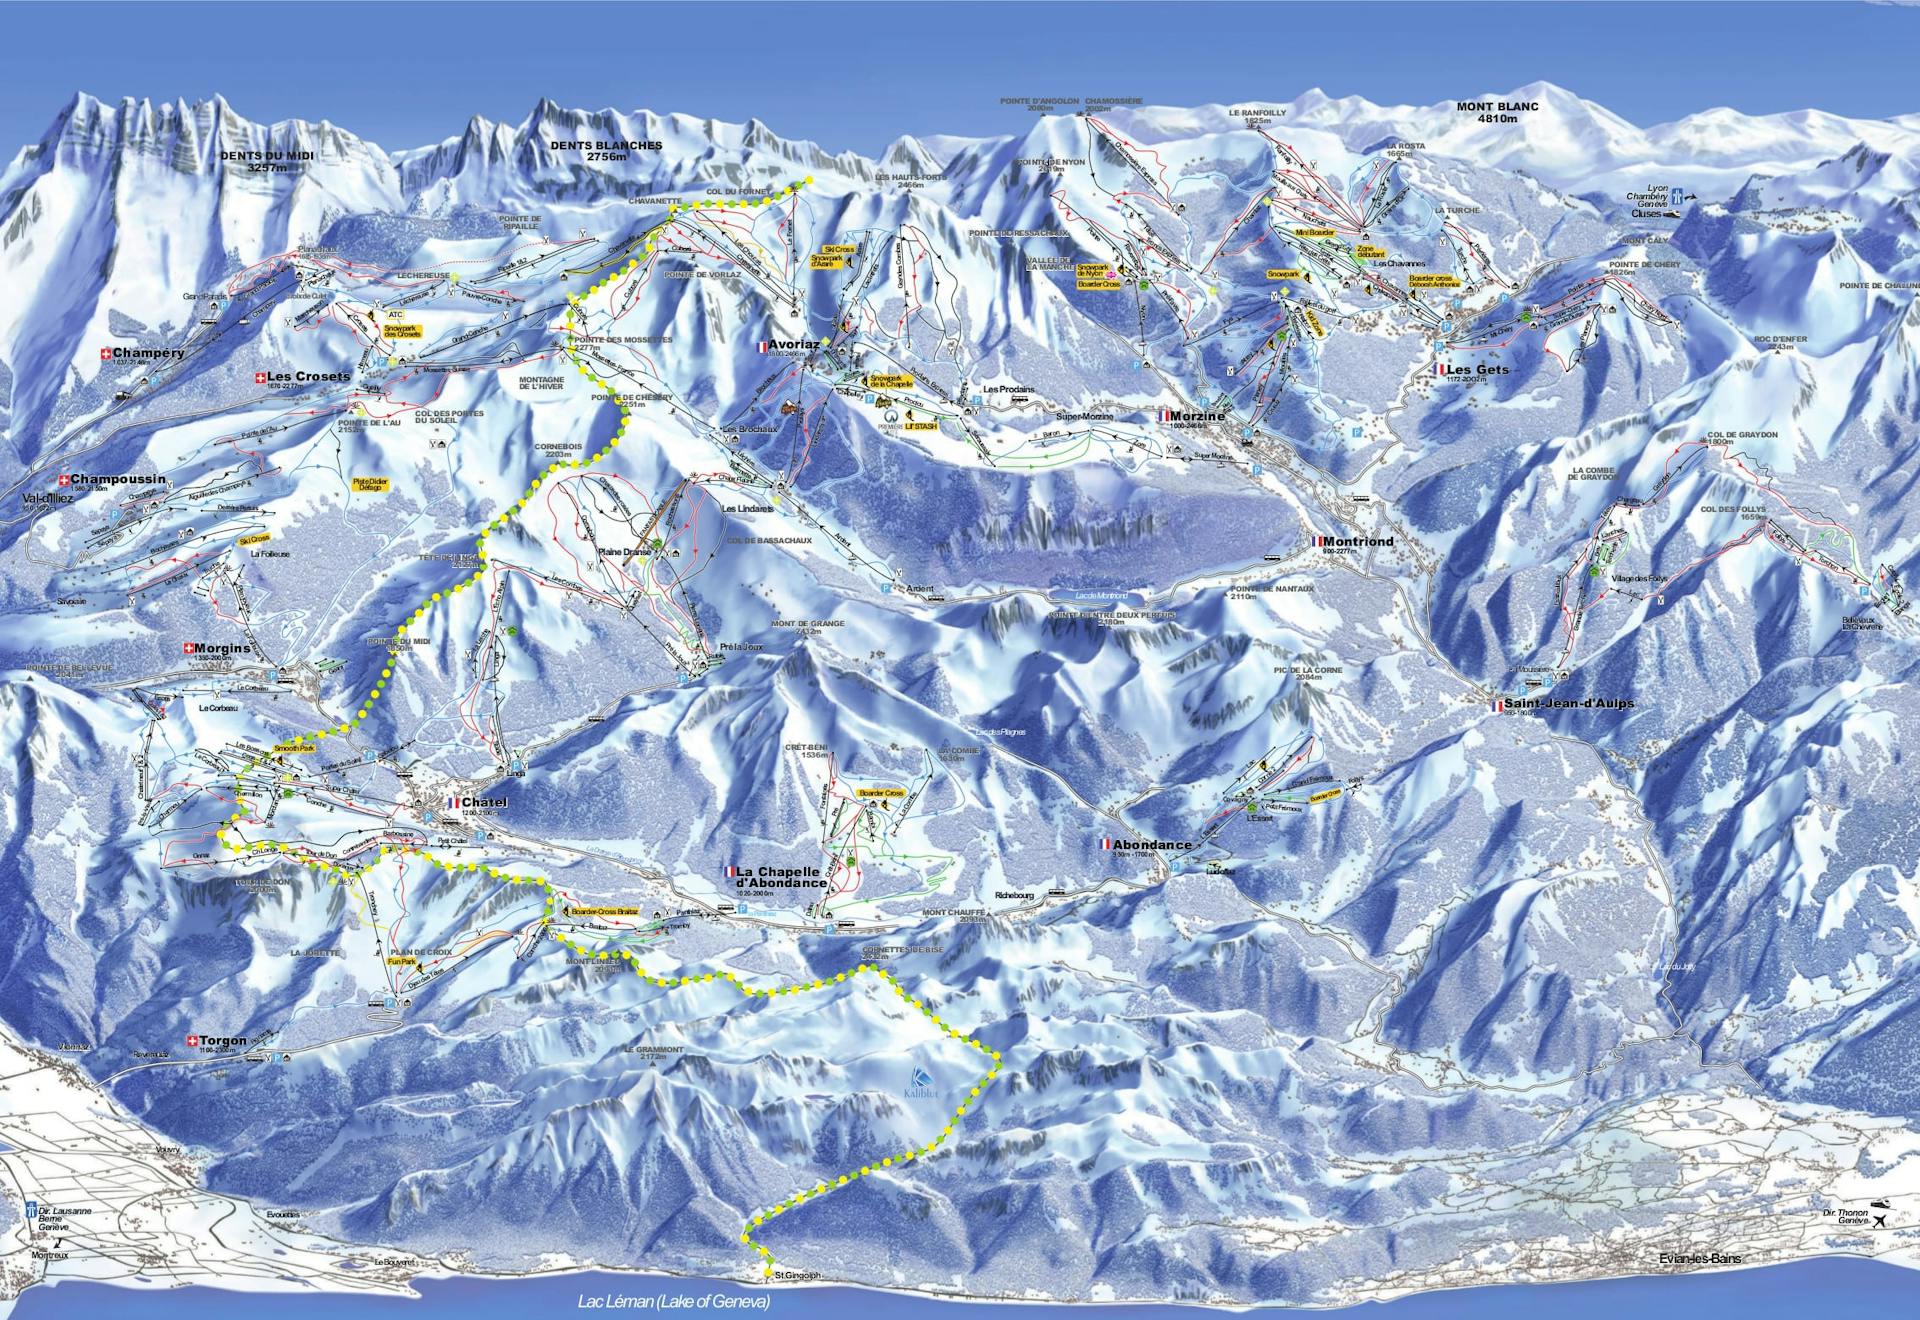 Morzine ski map